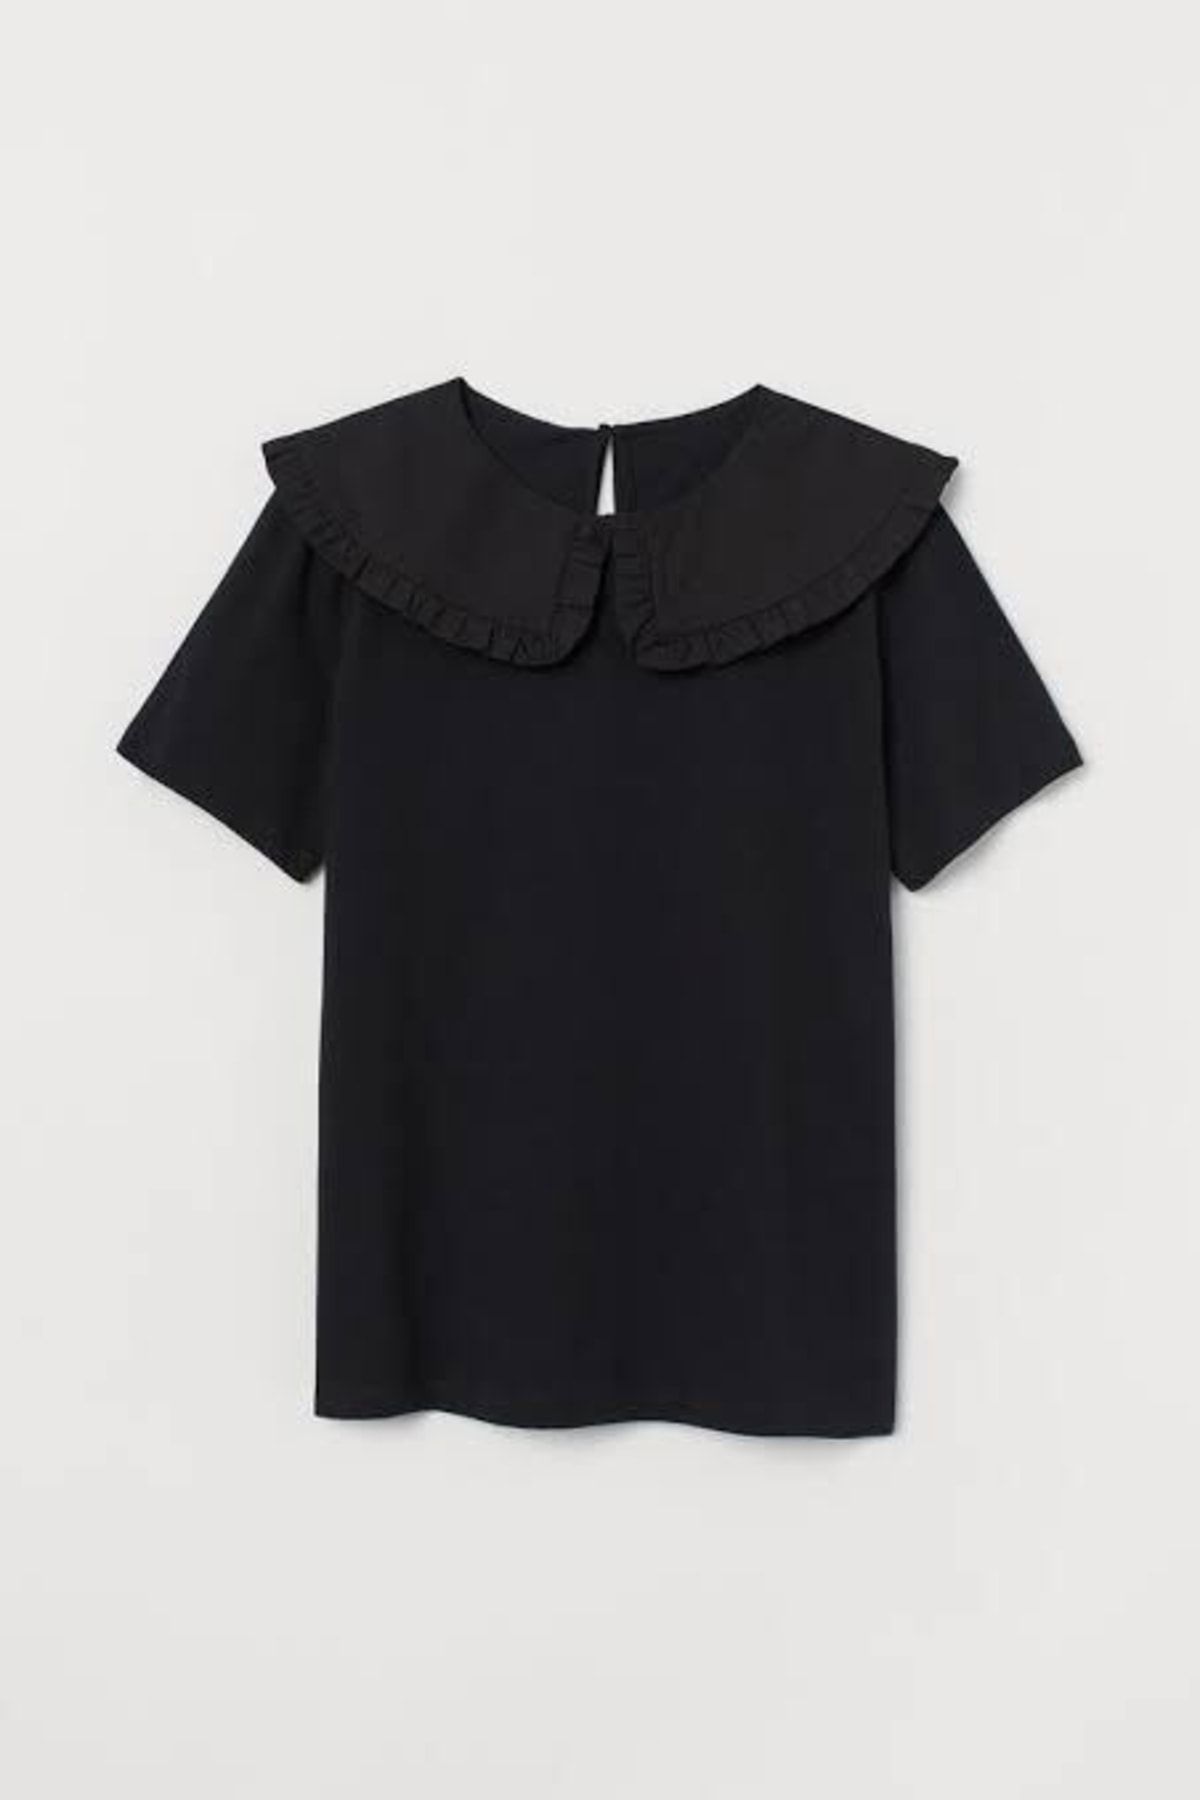 ENZO Kadın Siyah Bebe Yaka T-shirt